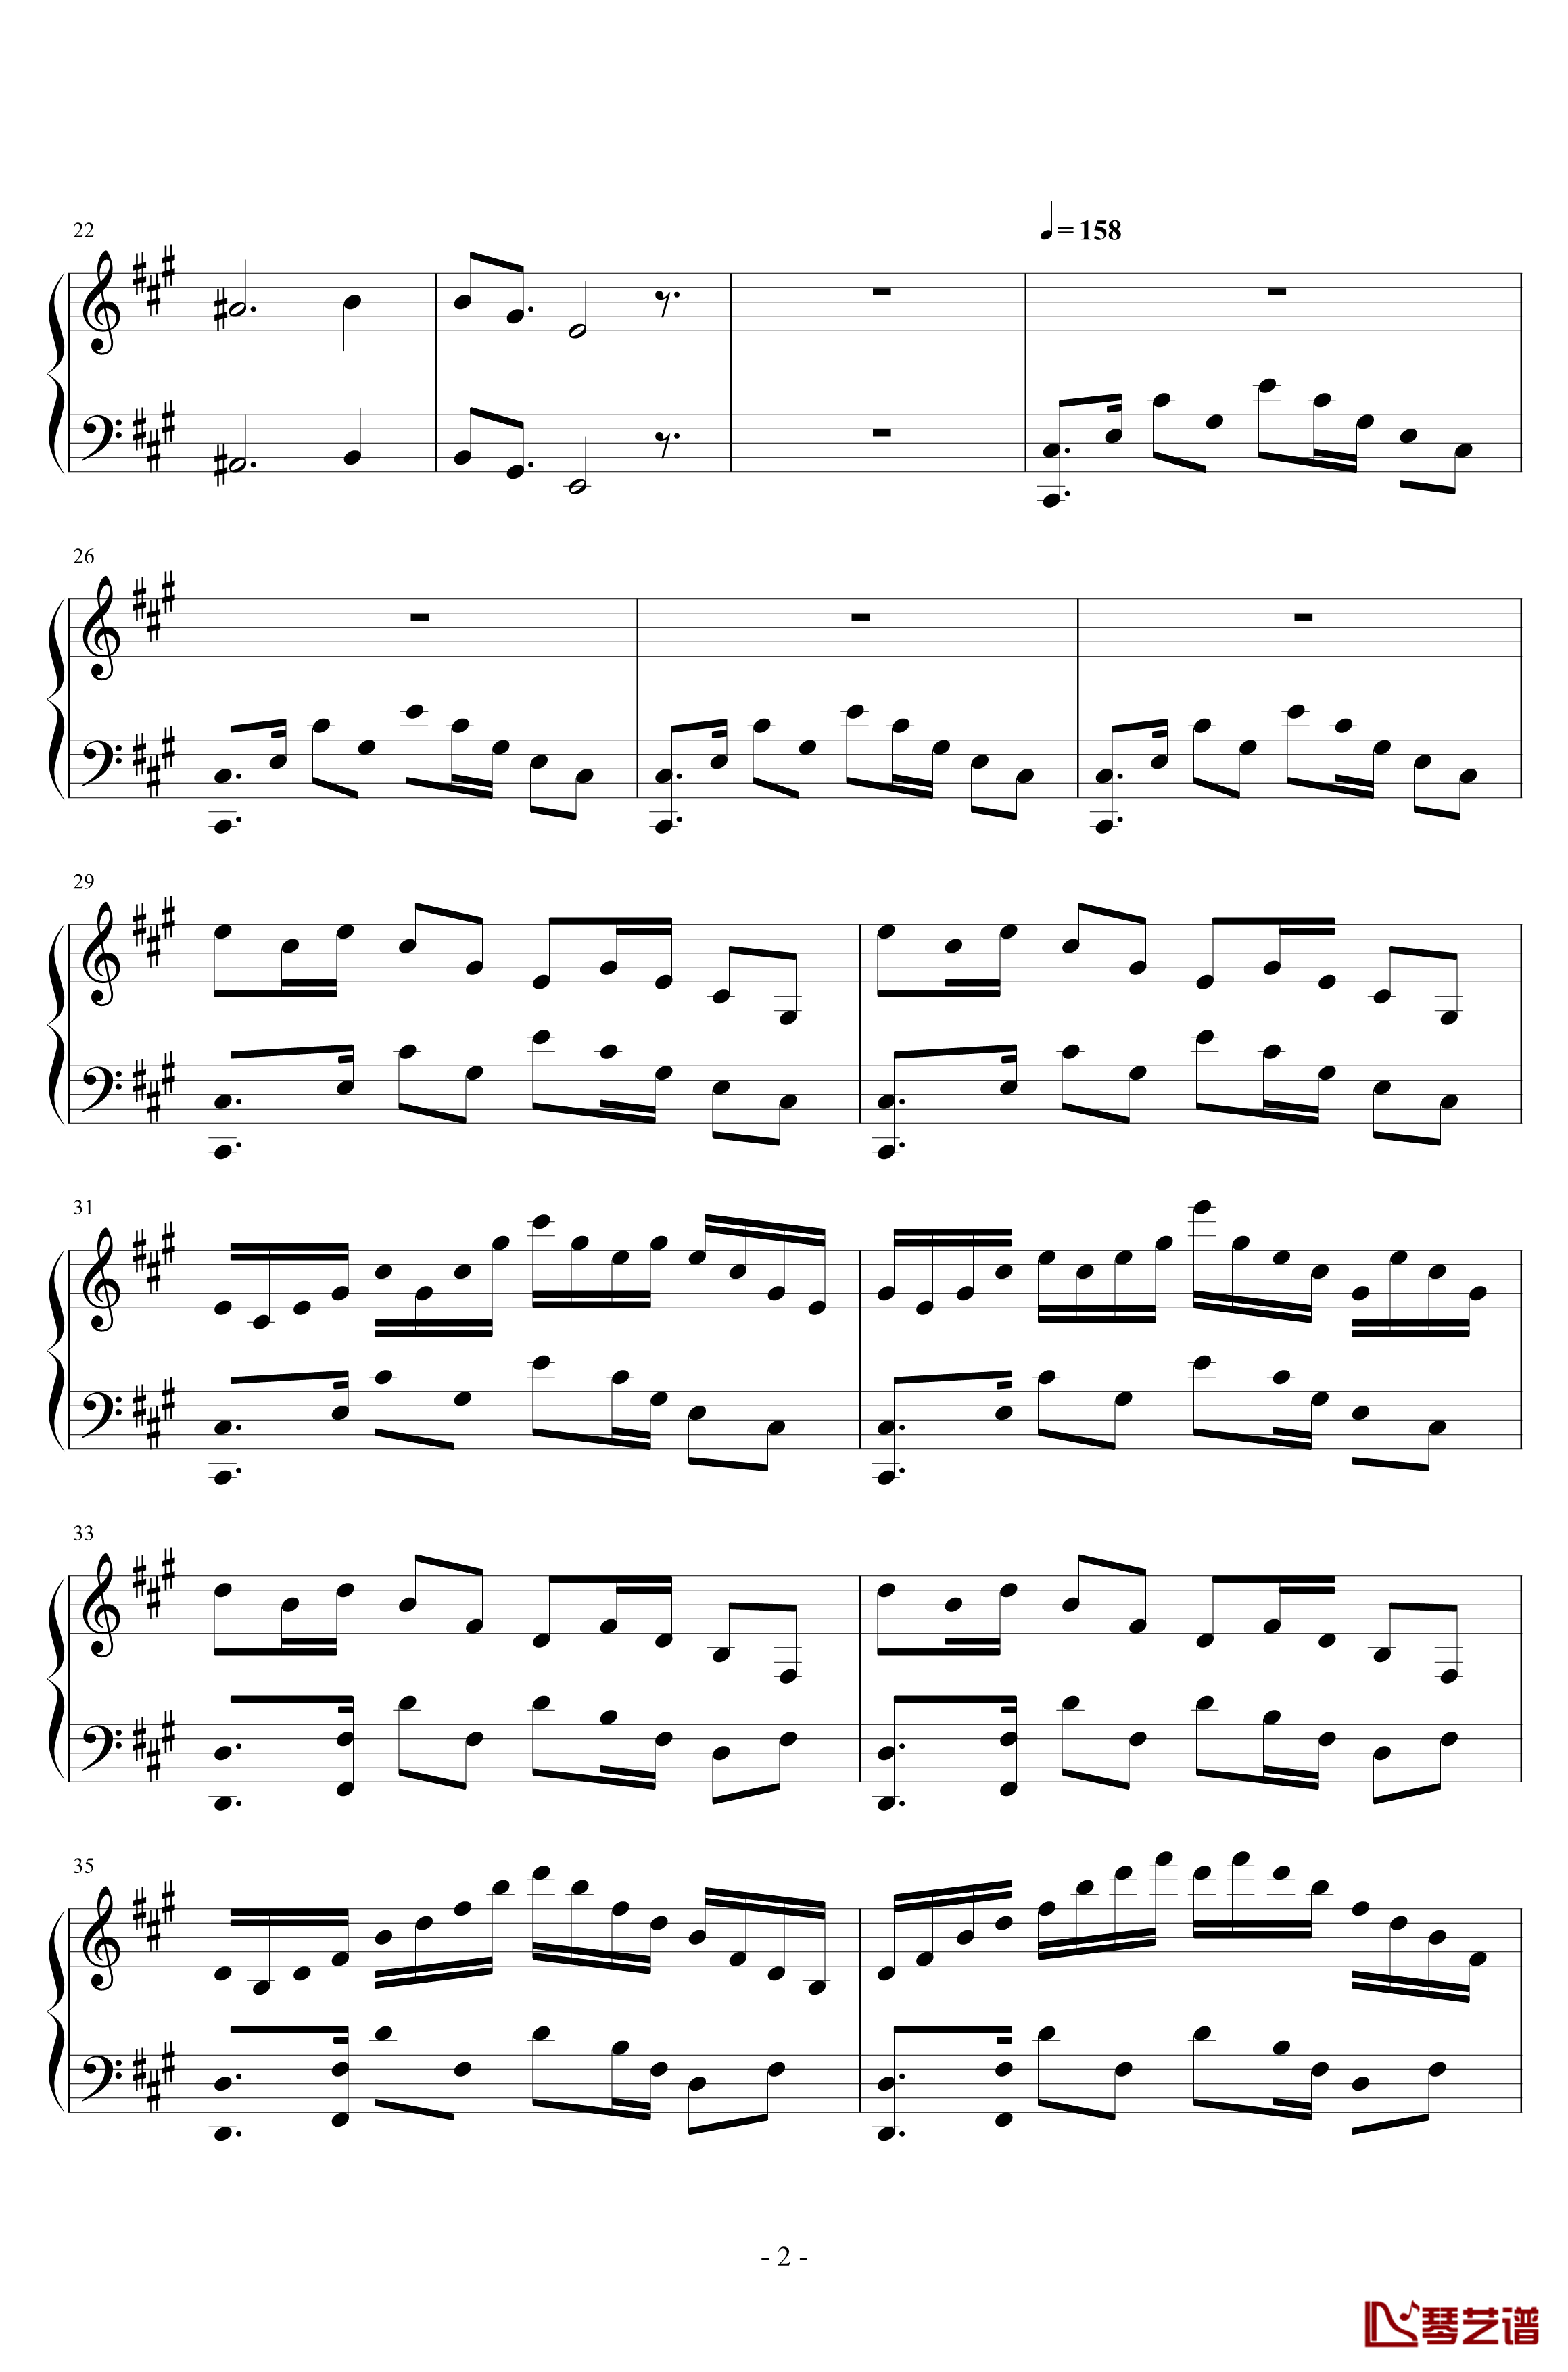 黄昏回旋曲钢琴谱-LN原创-pltp20176211137- Op.12